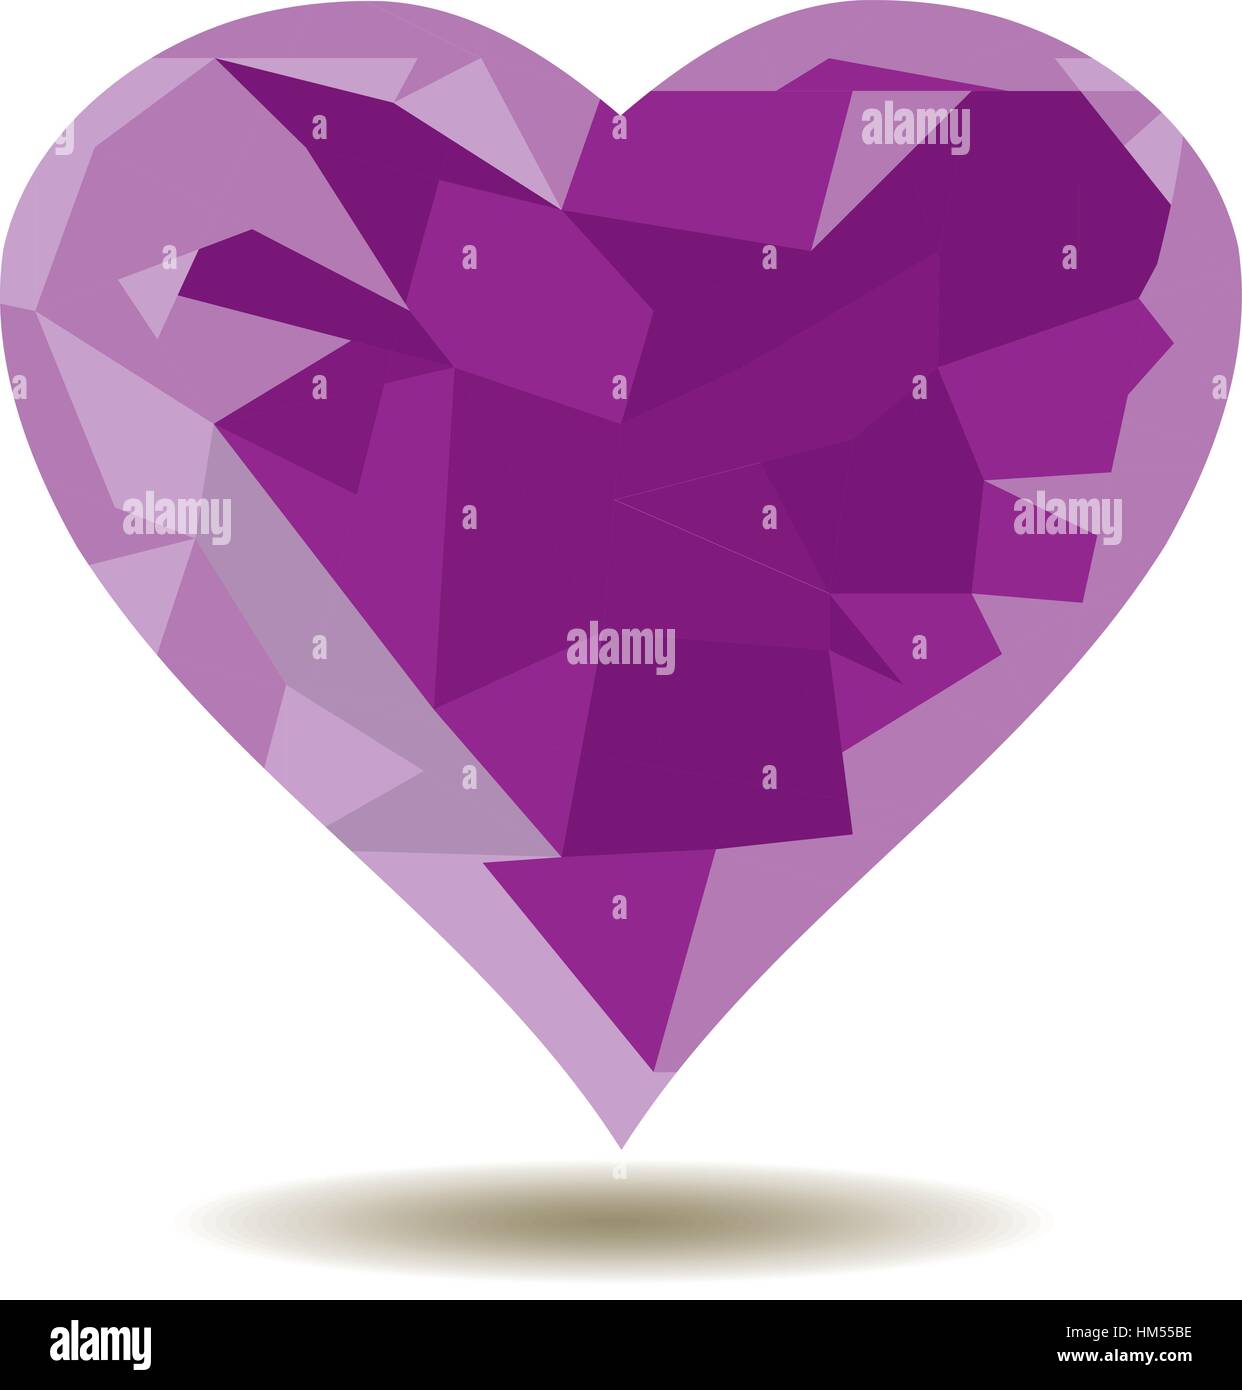 Illustrazione vettoriale di valentine card con mosaico viola Icona cuore Illustrazione Vettoriale